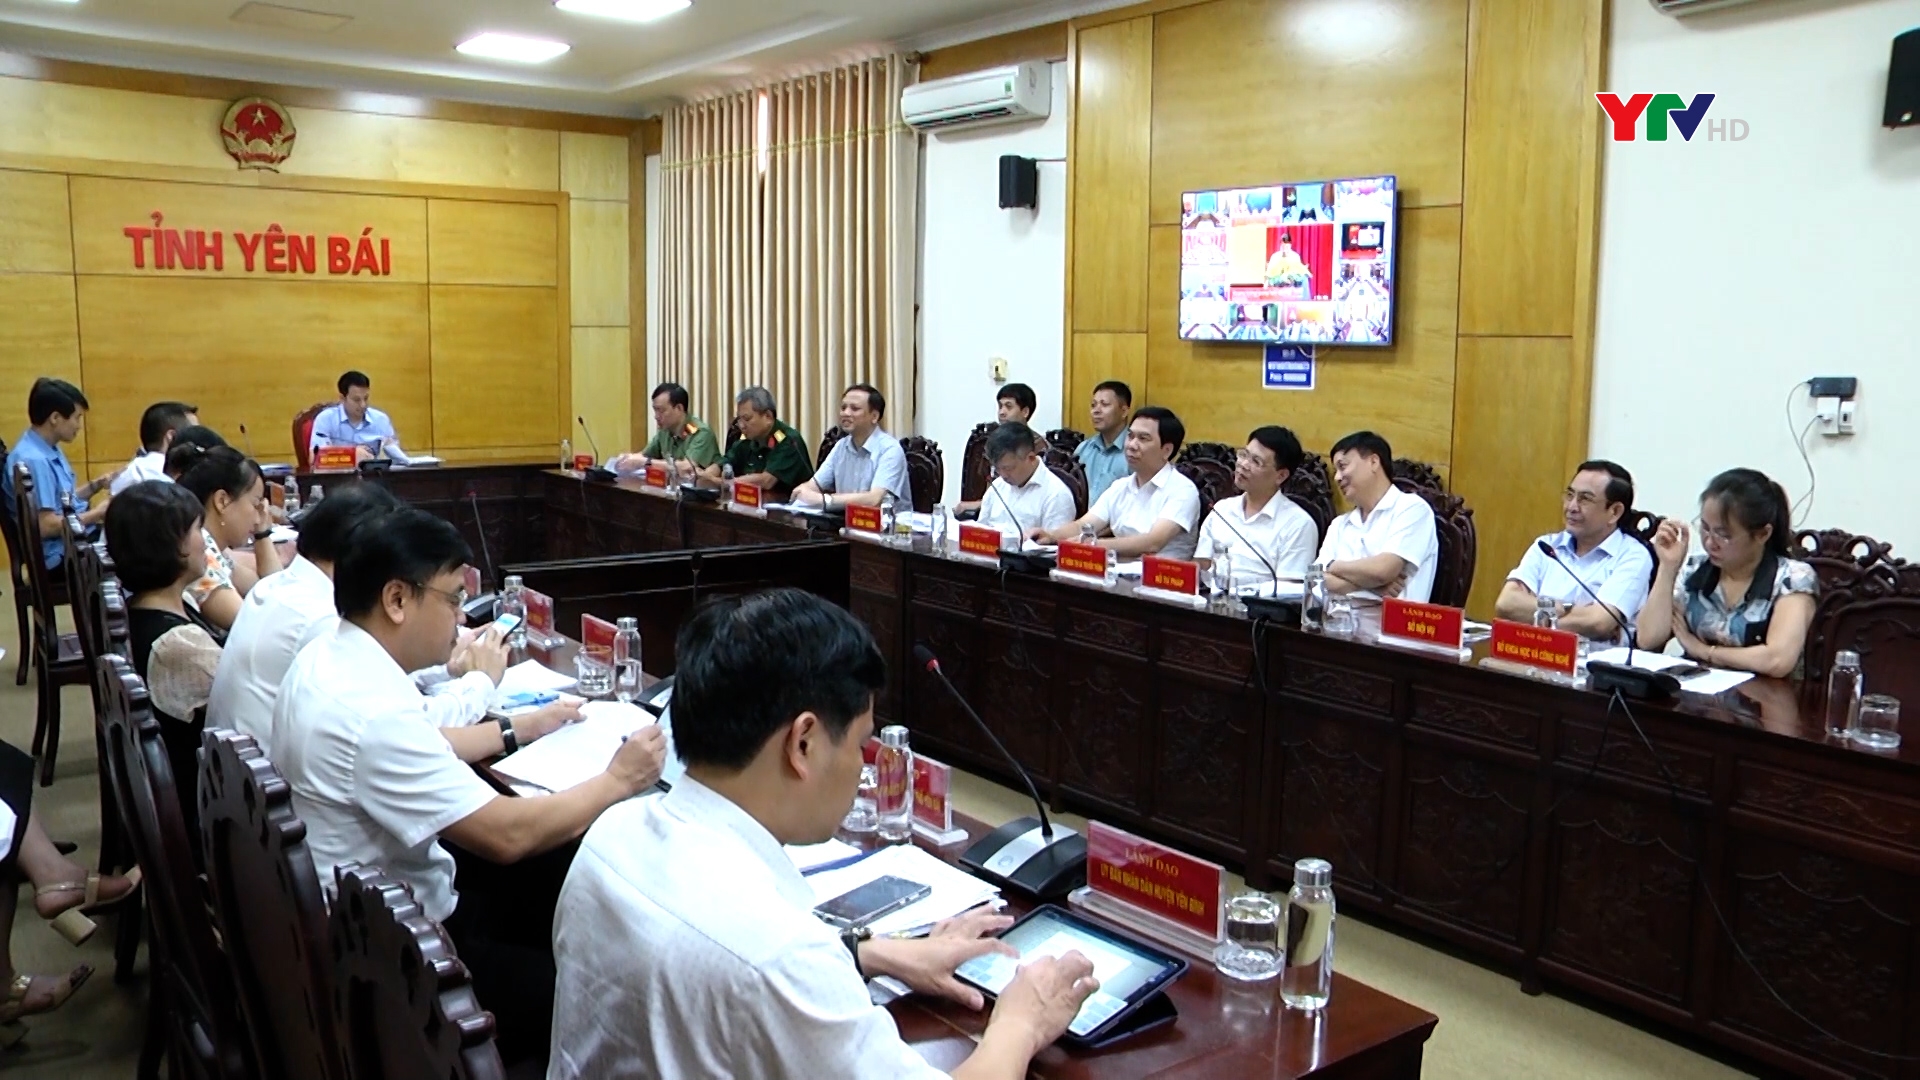 Yên Bái dự Hội nghị trực tuyến toàn quốc quán triệt Kết luận 12 của Bộ Chính trị và Nghị quyết 169 của Chính phủ về công tác người Việt Nam ở nước ngoài